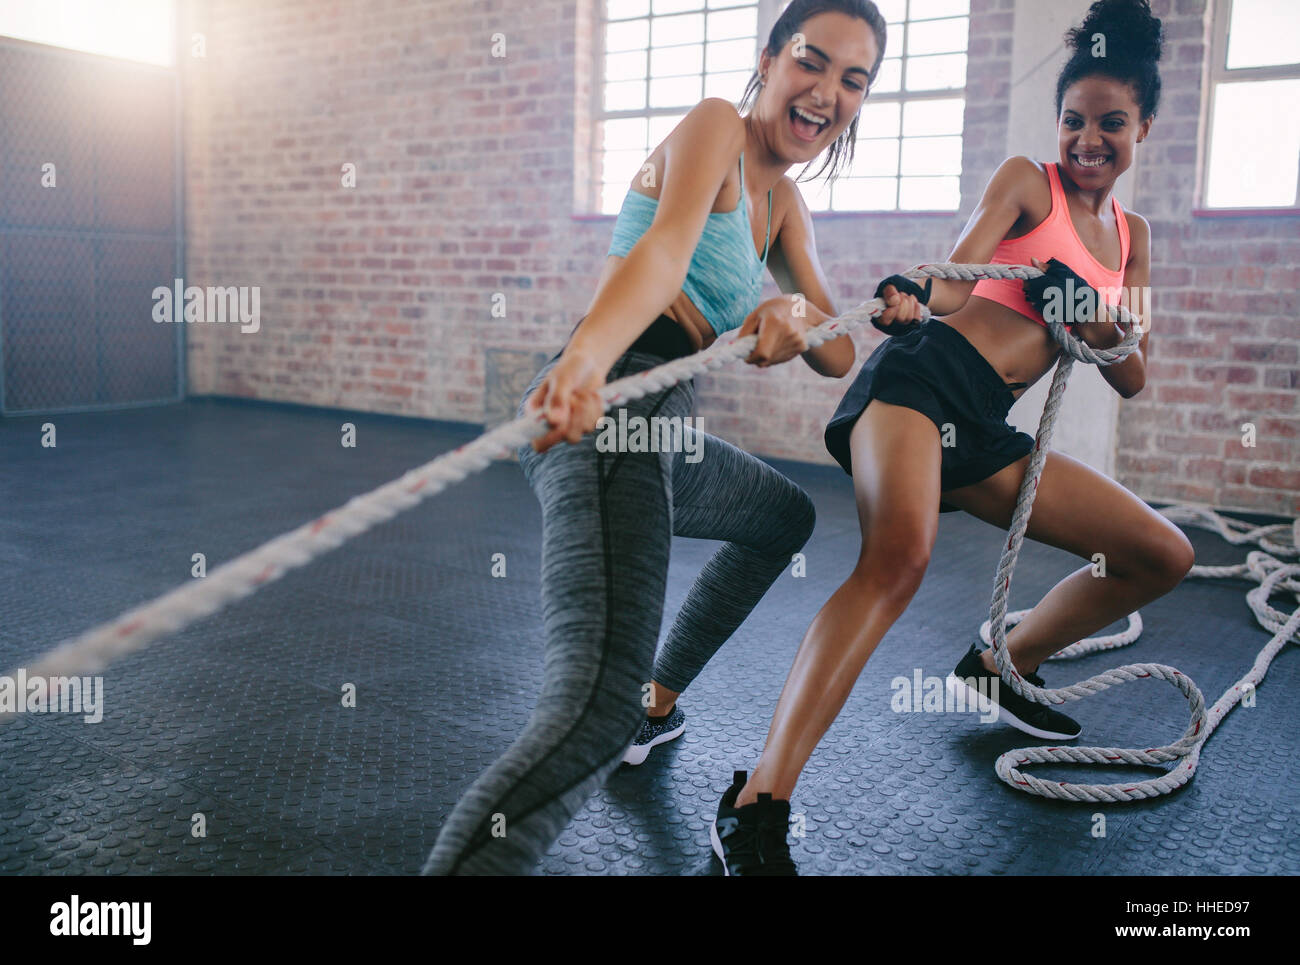 Aufnahme von zwei jungen Frauen, die Übungen mit Seil in einem Fitnessstudio. Fitness Frauen ziehen Seil im Fitnessstudio. Stockfoto